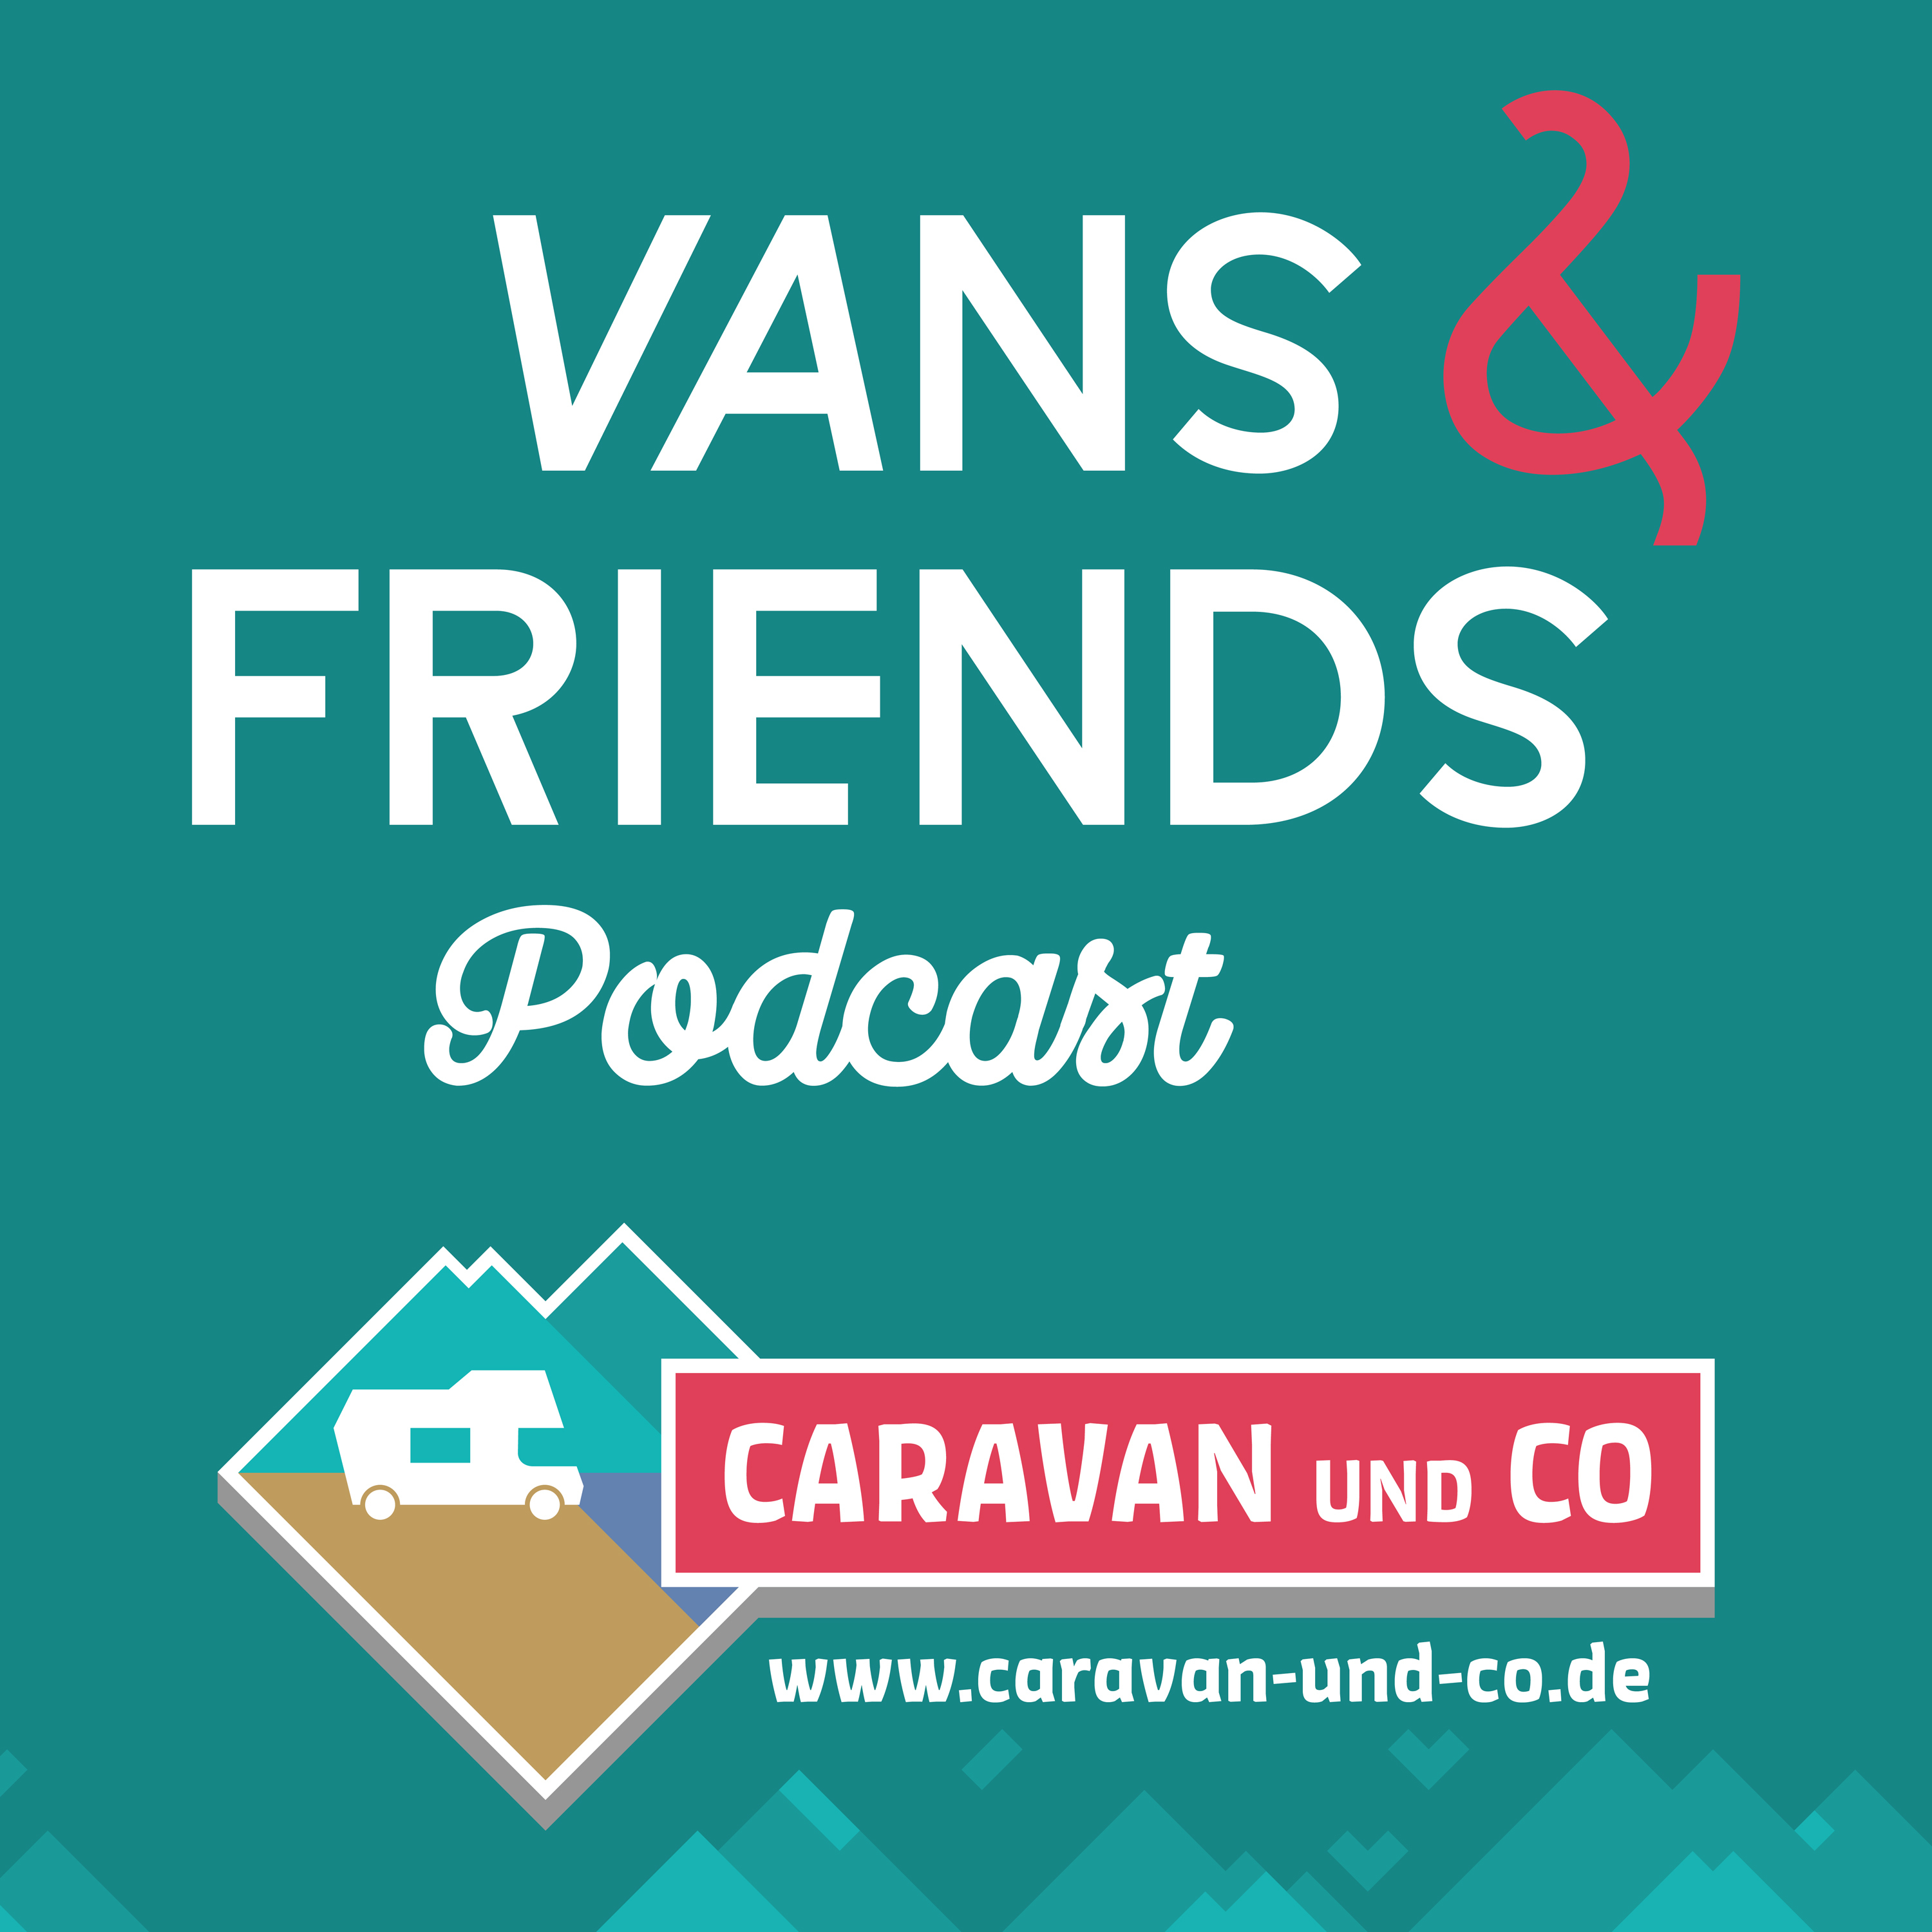 Vans & Friends: #23 Caravan und Co – Wer ist dabei?